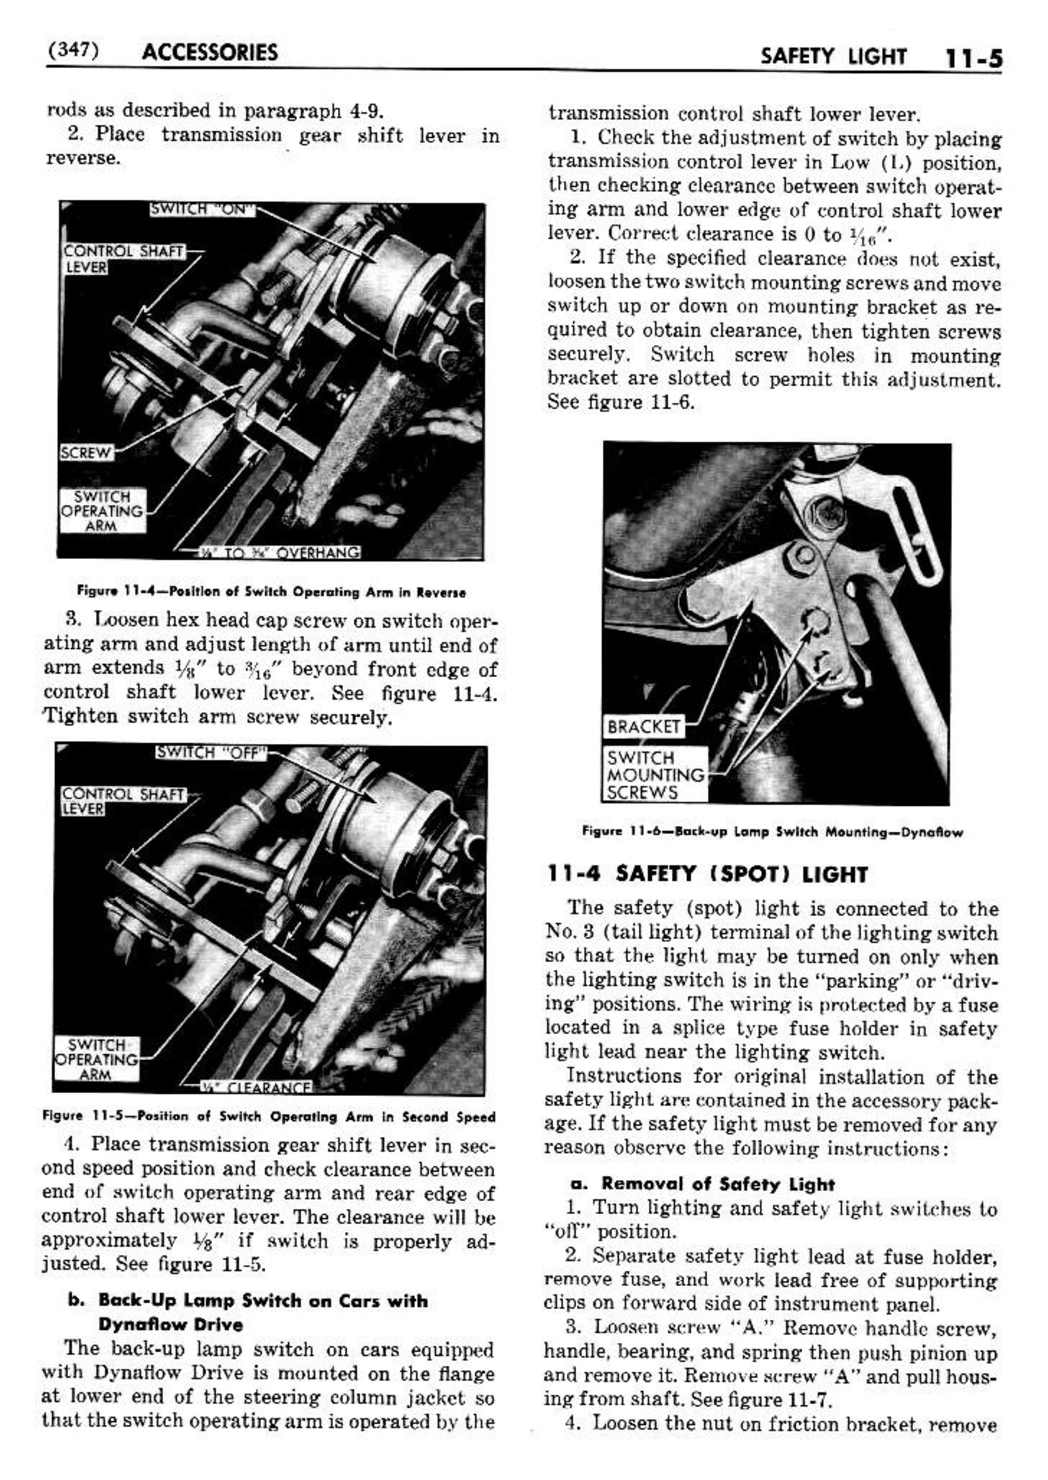 n_12 1950 Buick Shop Manual - Accessories-005-005.jpg